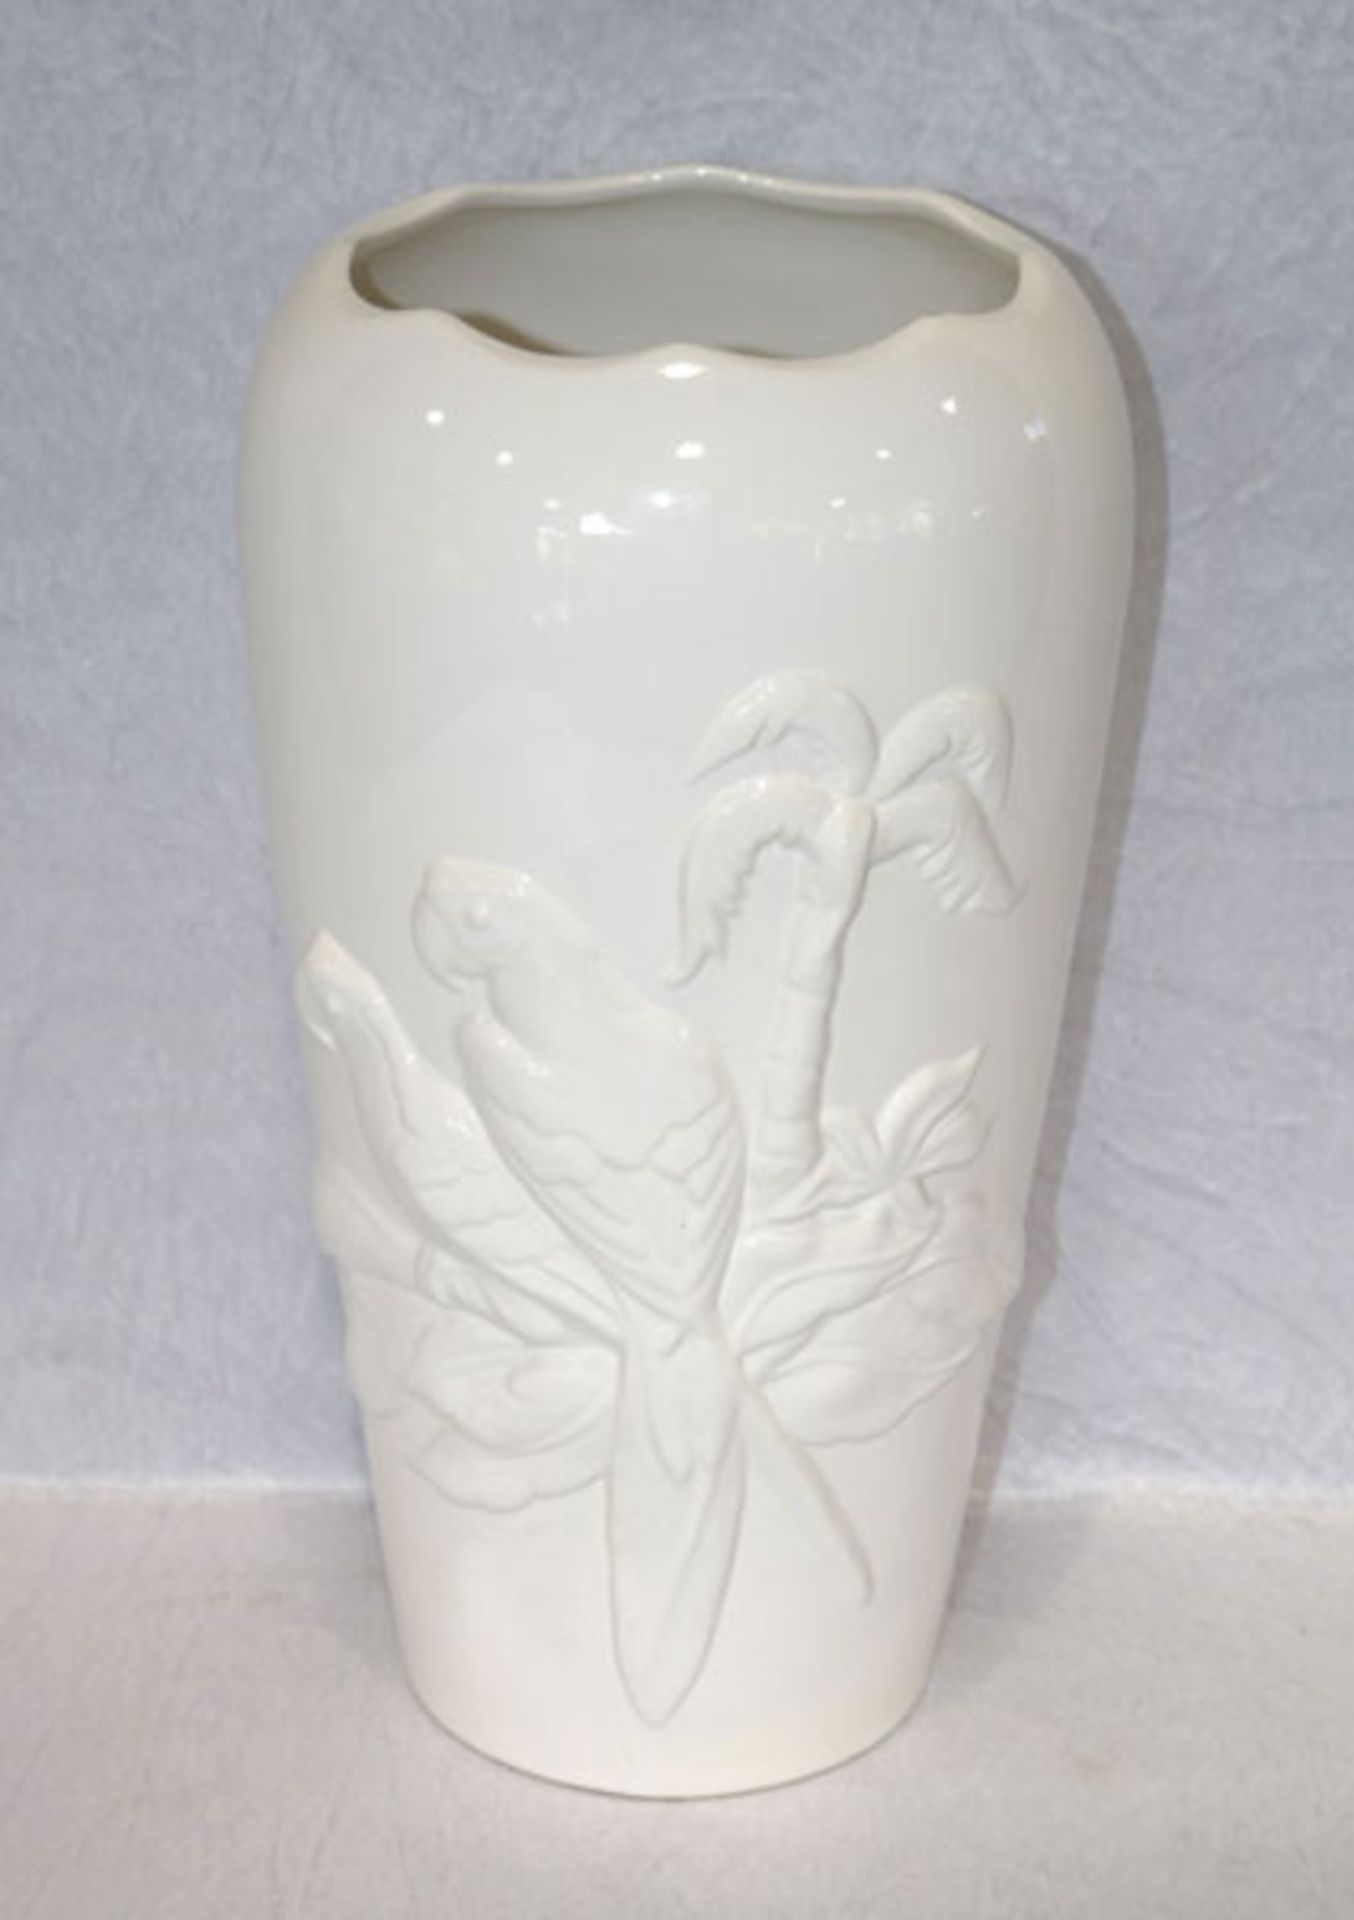 Keramik Bodenvase mit reliefiertem Papageien-Dekor, weiß glasiert, H 41 cm, D 23 cm, Rand leicht